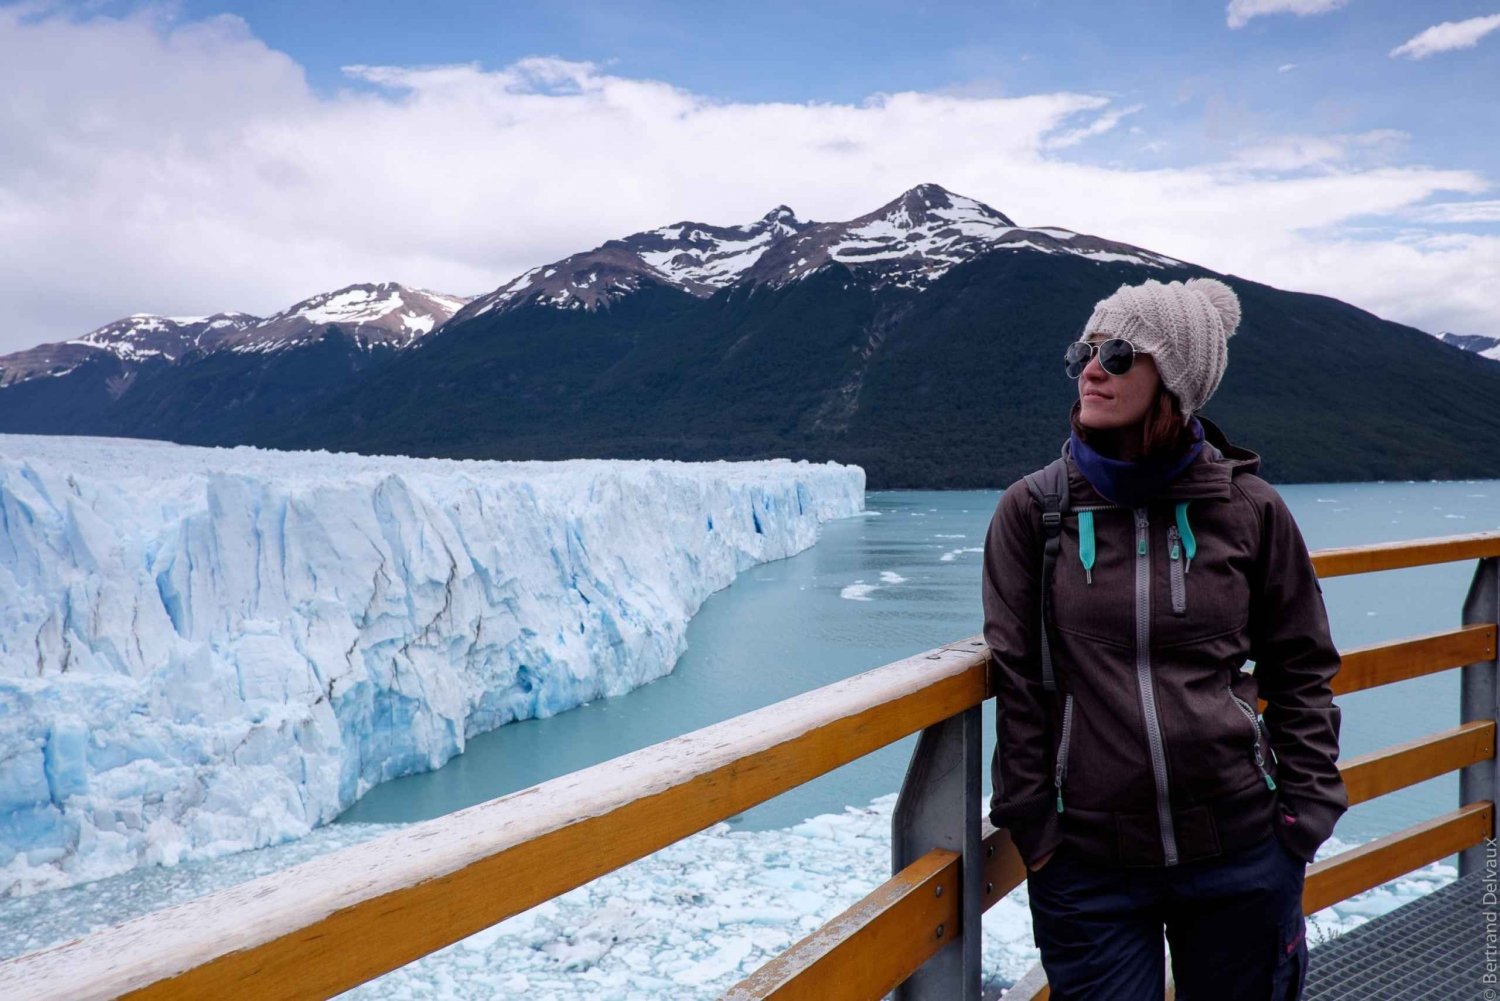 Perito Moreno Glacier and Boat Safari